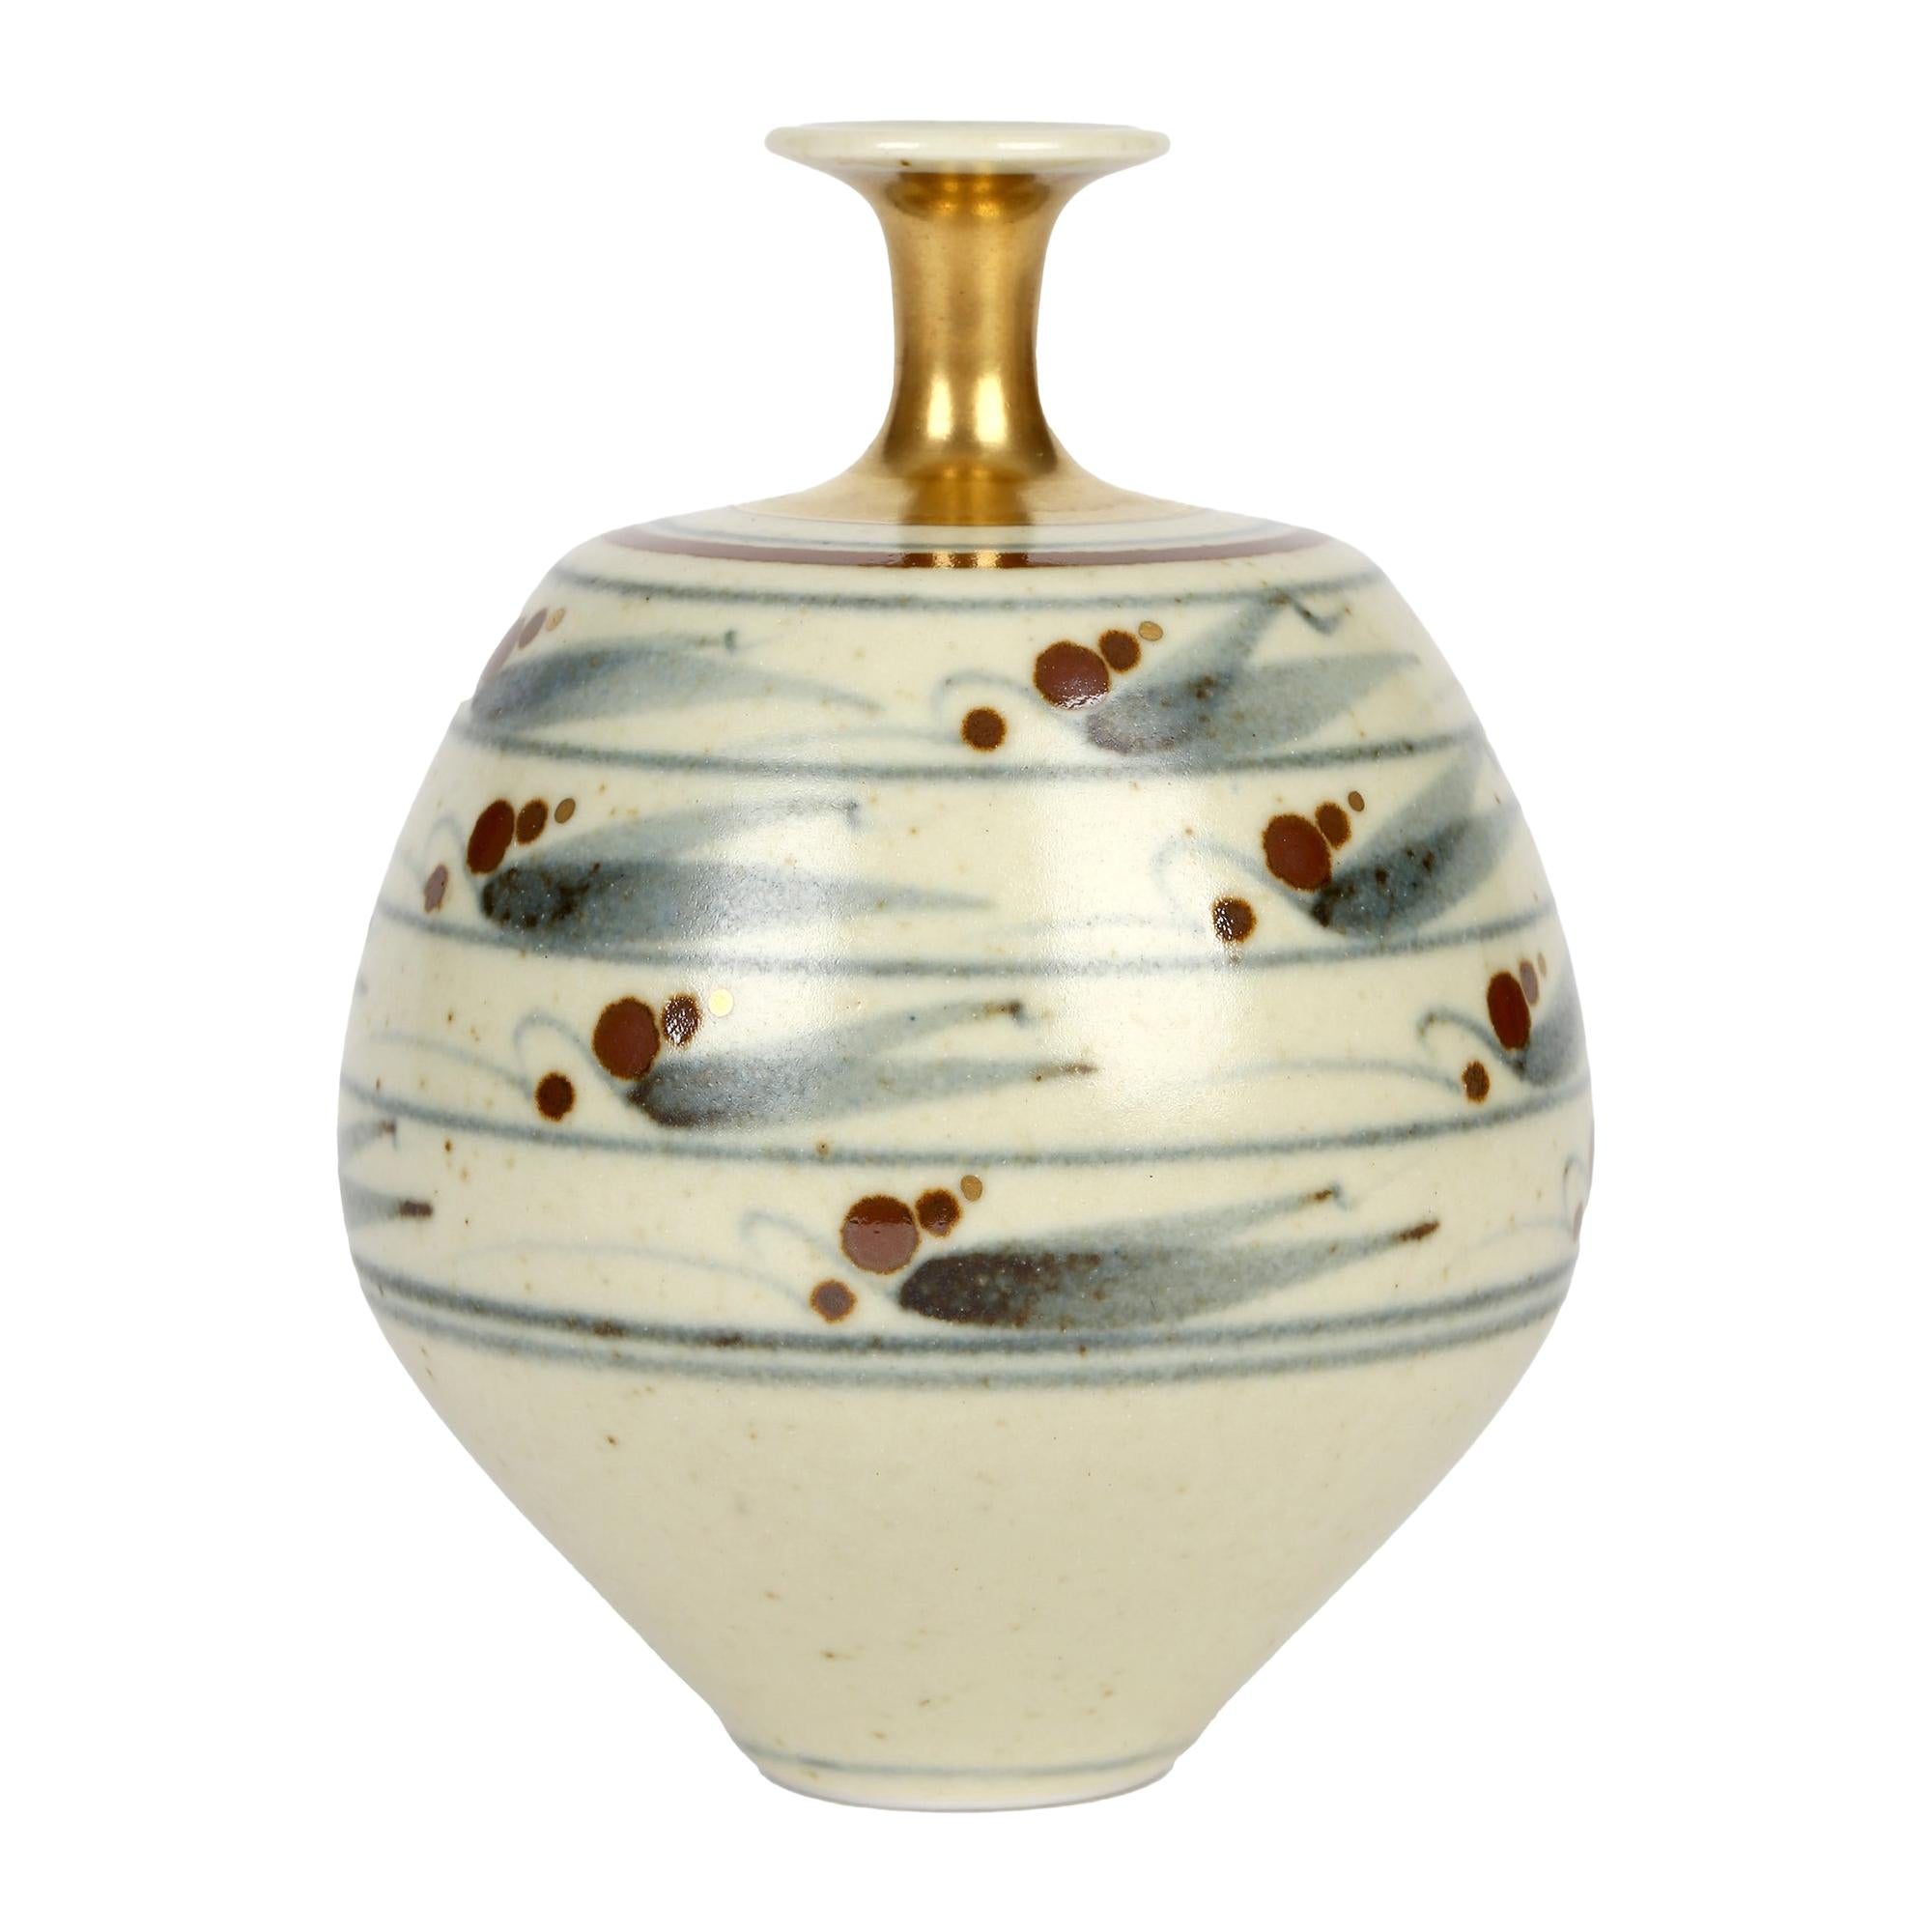 Derek Clarkson Brush Decorated Porcelain Studio Pottery Vase